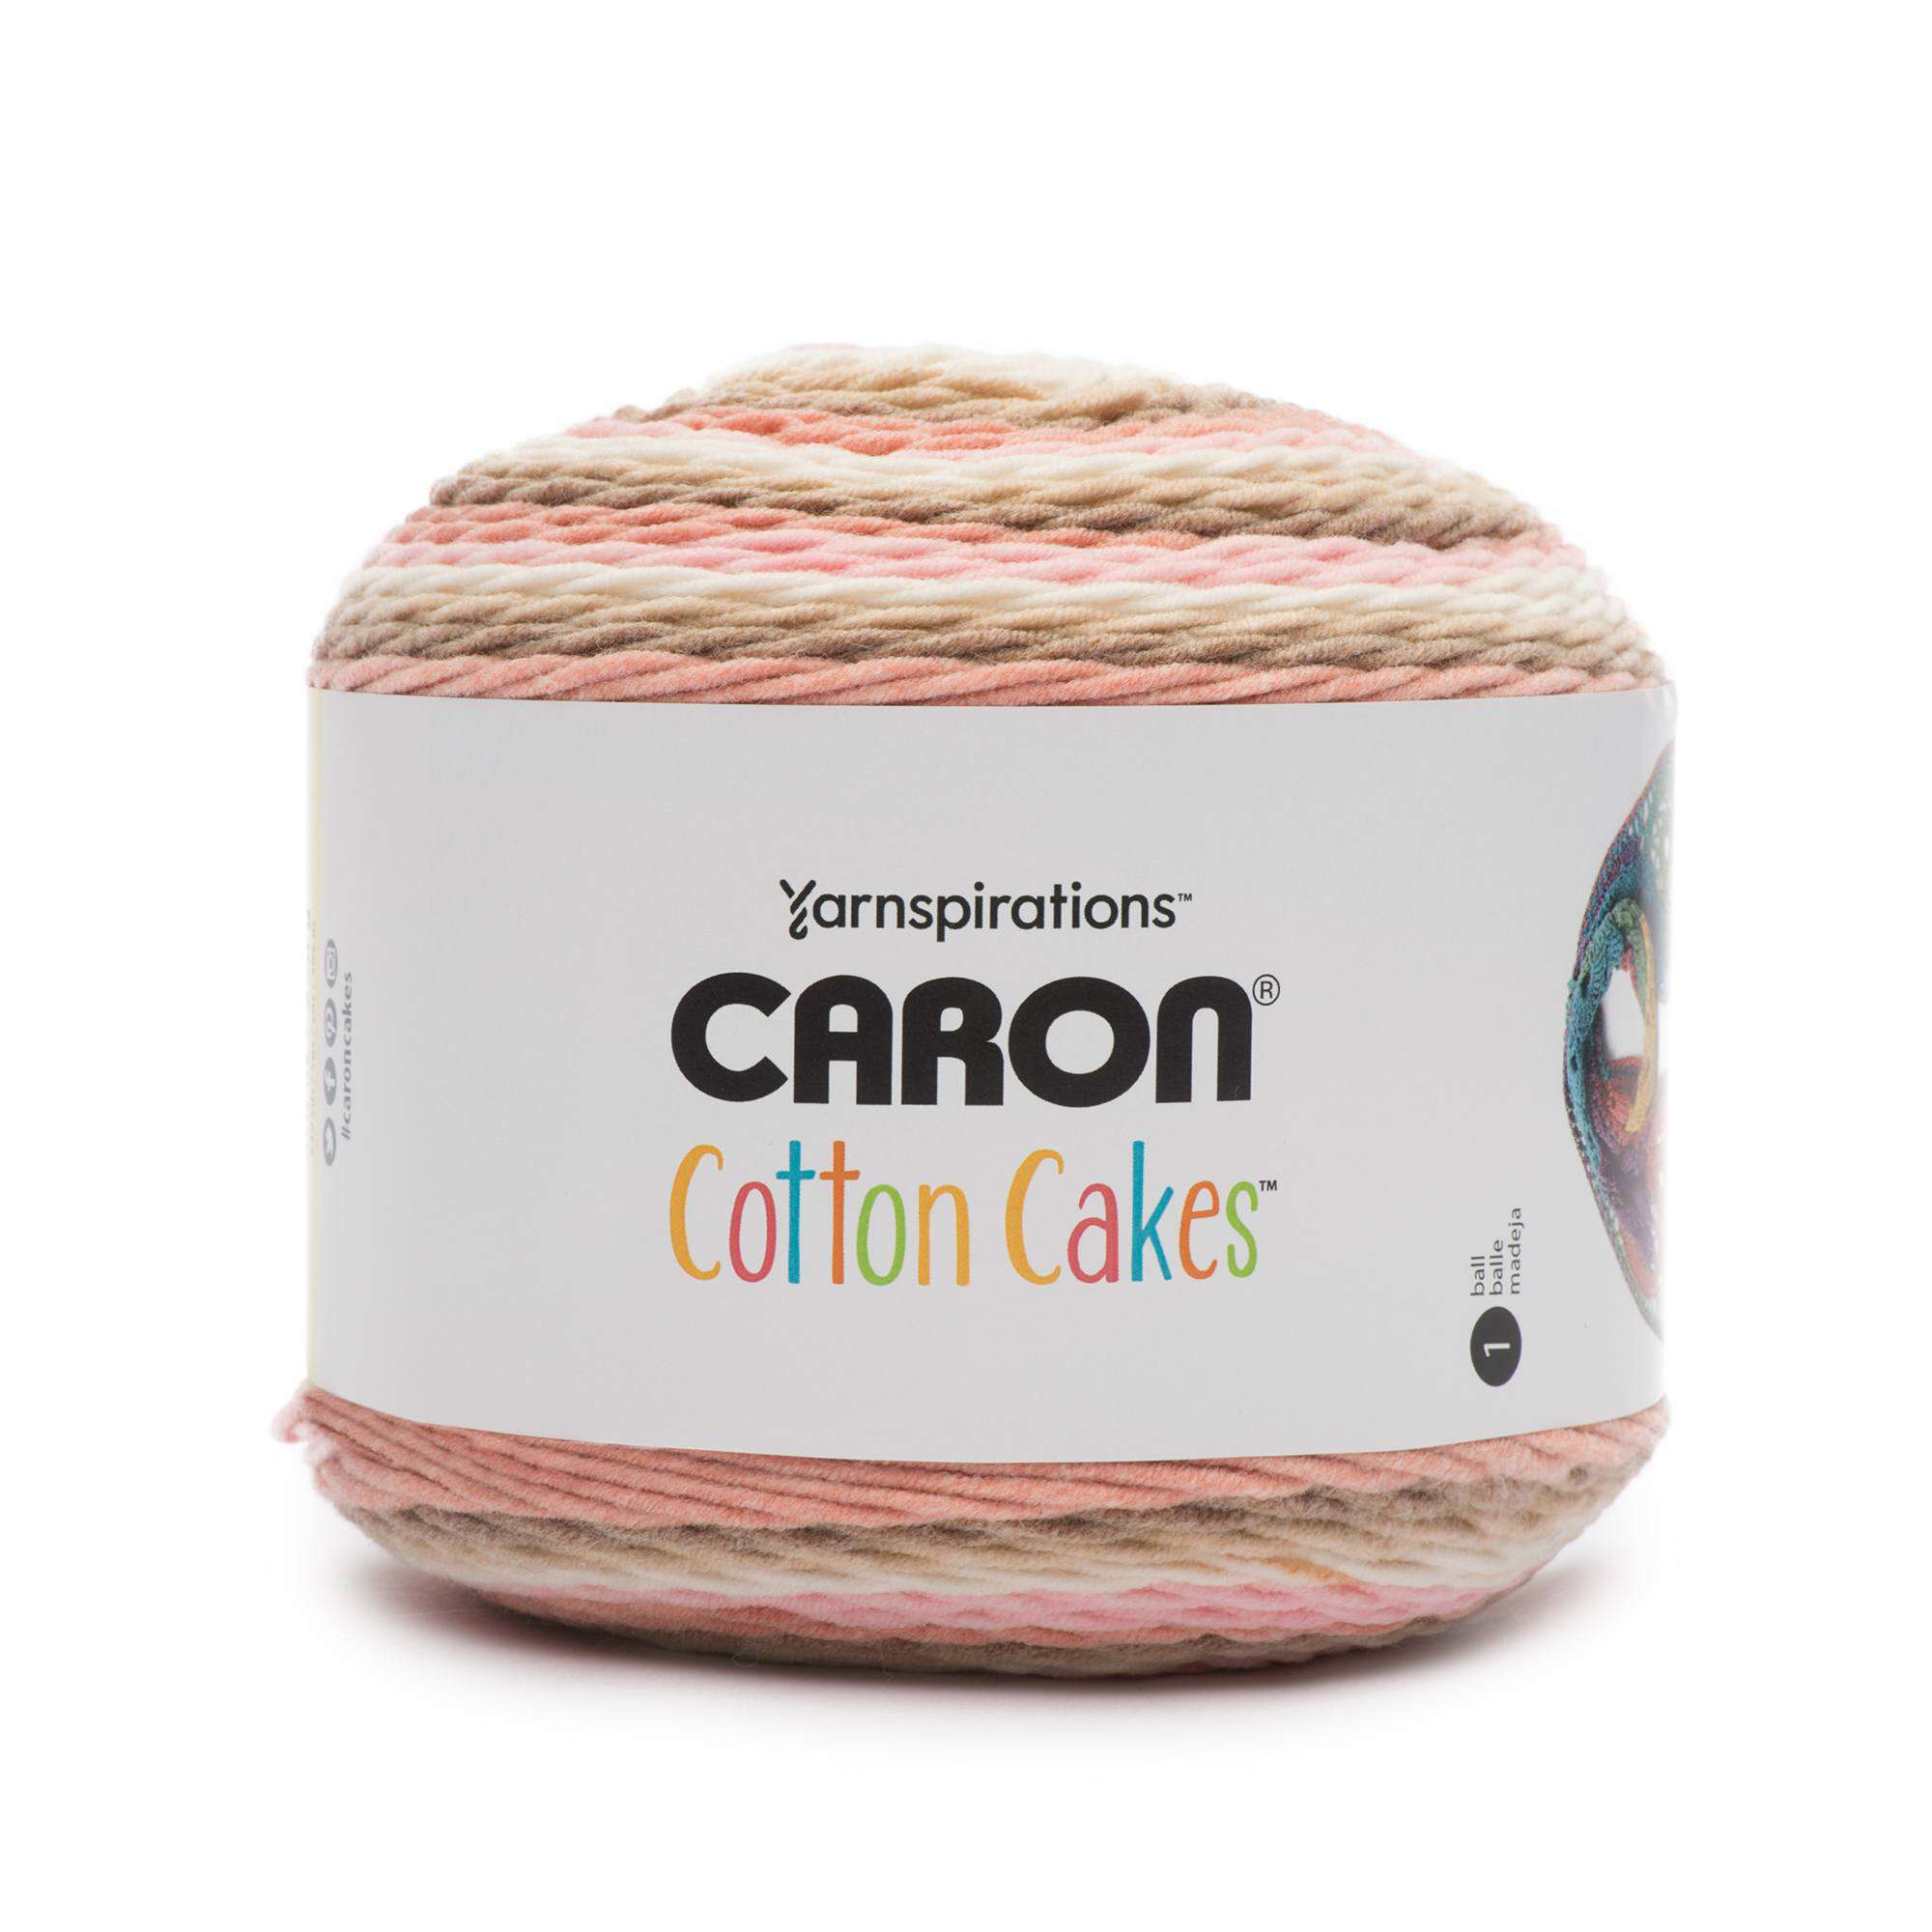 Multi Cotton Yarn Cakes in BLUE WINE, Sport DK Yarn for Crocheting